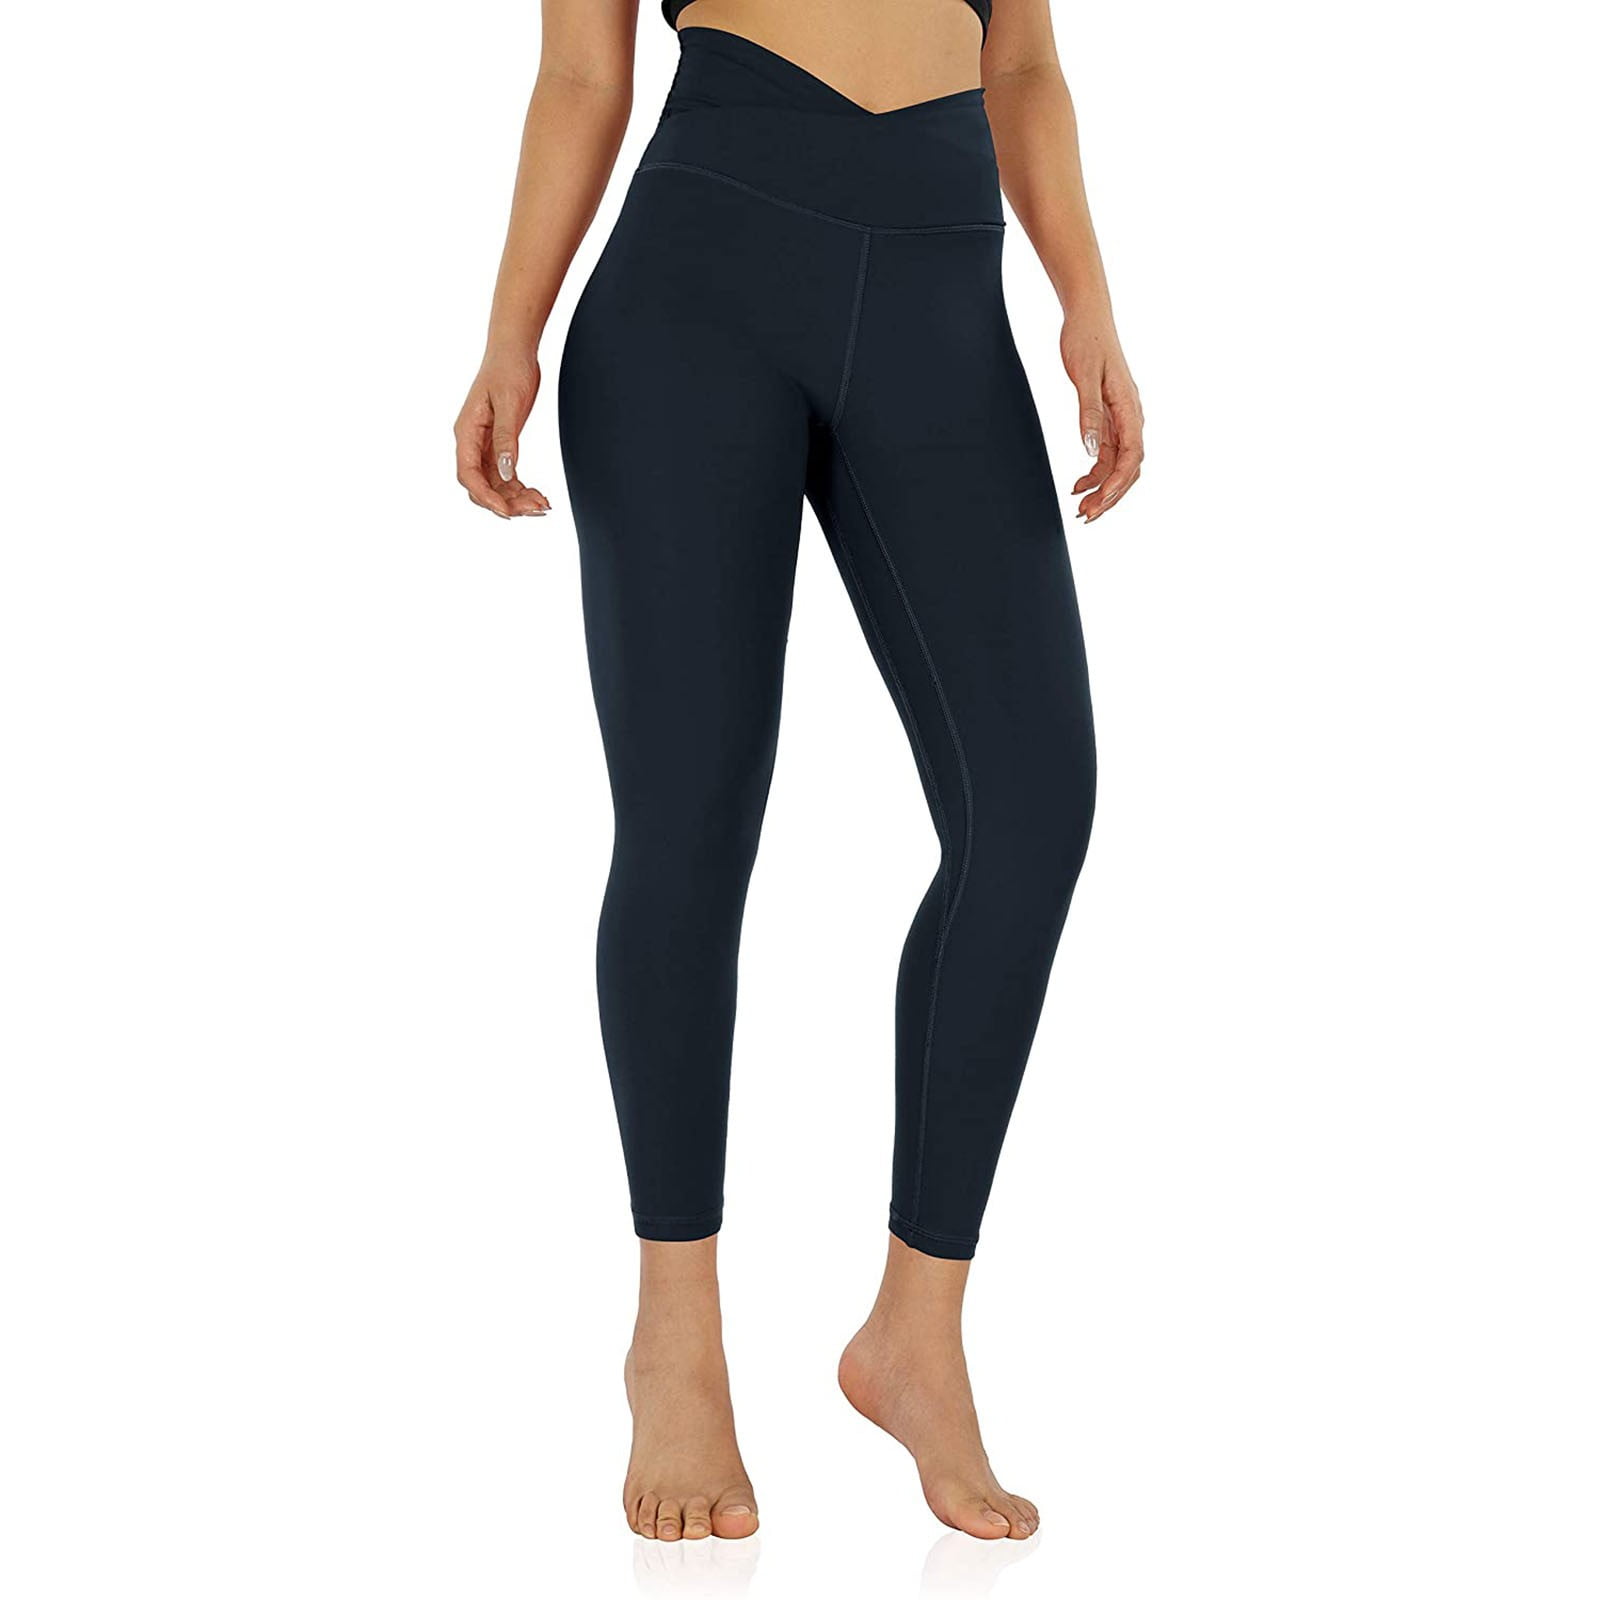 Women's Active Lattice Capri Cutout Workout Leggings - BLACK, S 